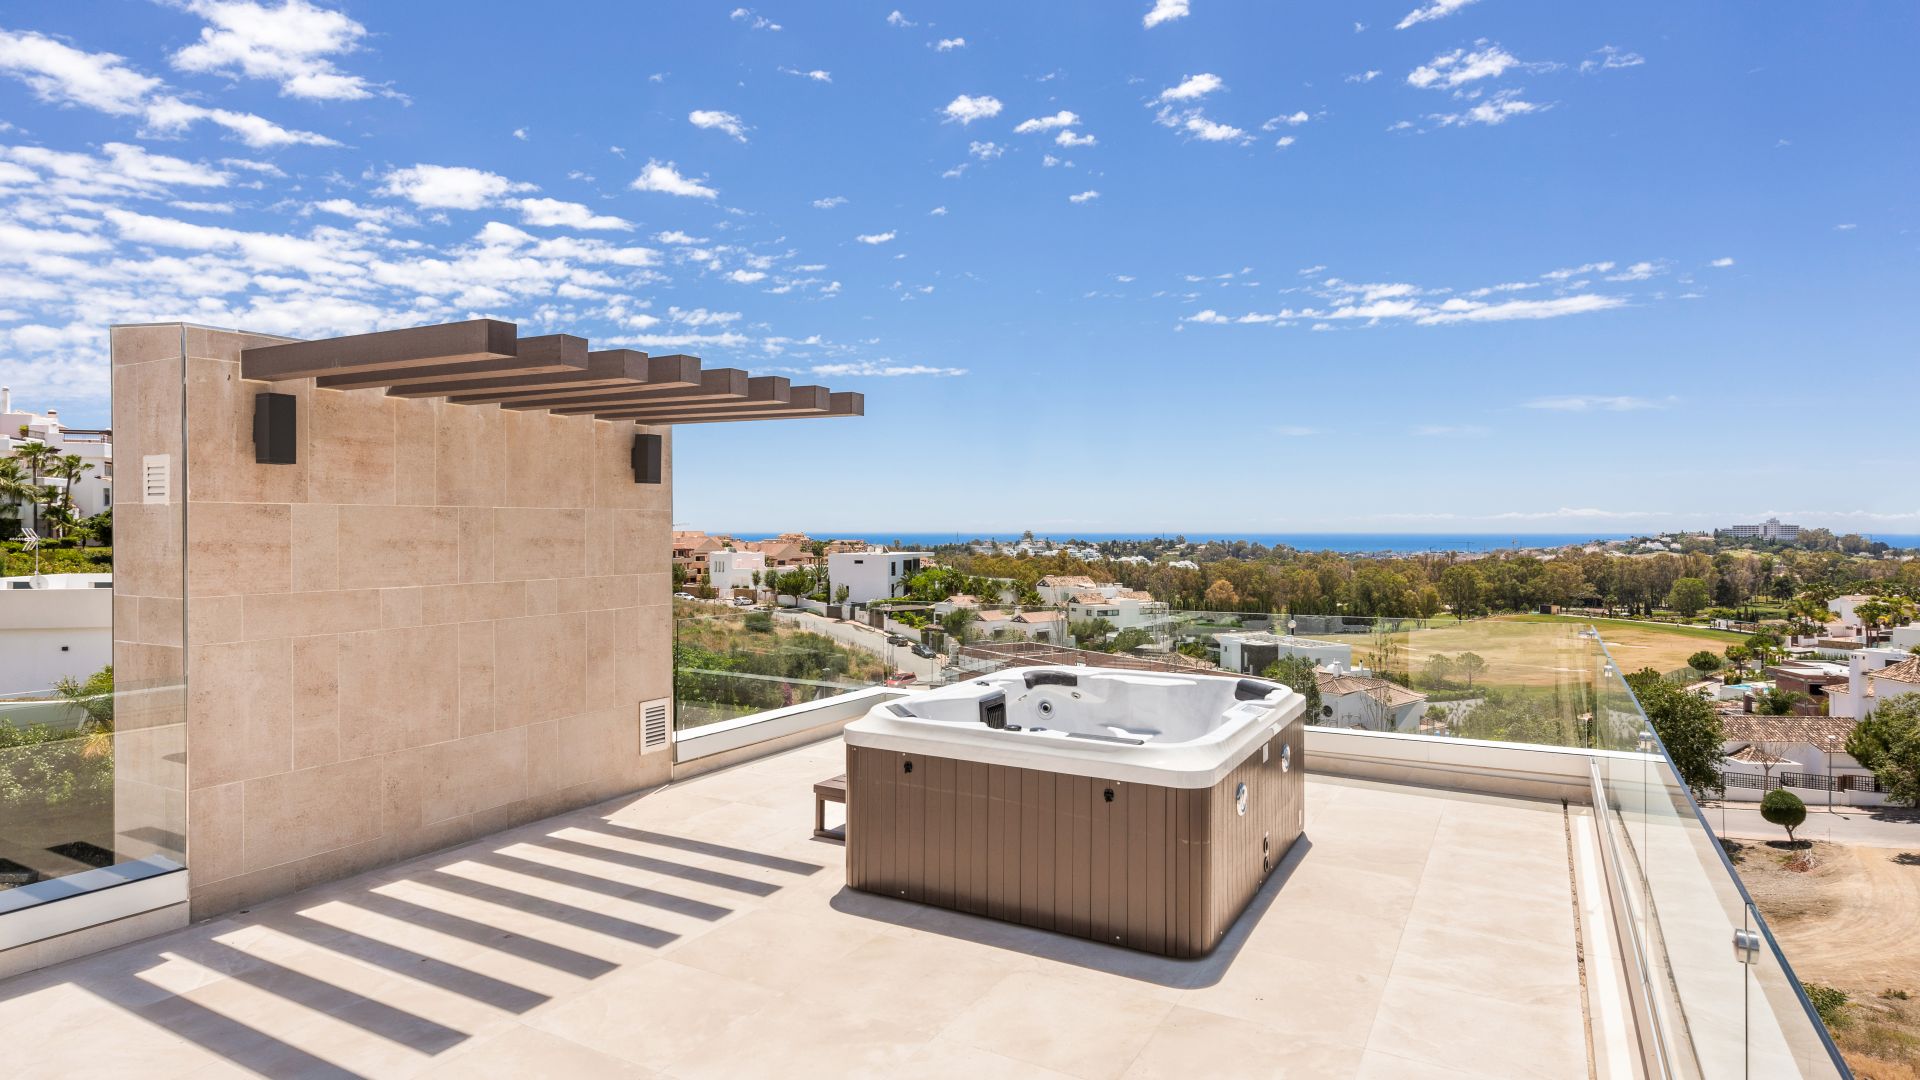 Une villa contemporaine ultra moderne récemment achevée - Benahavis - Malaga - Espagne